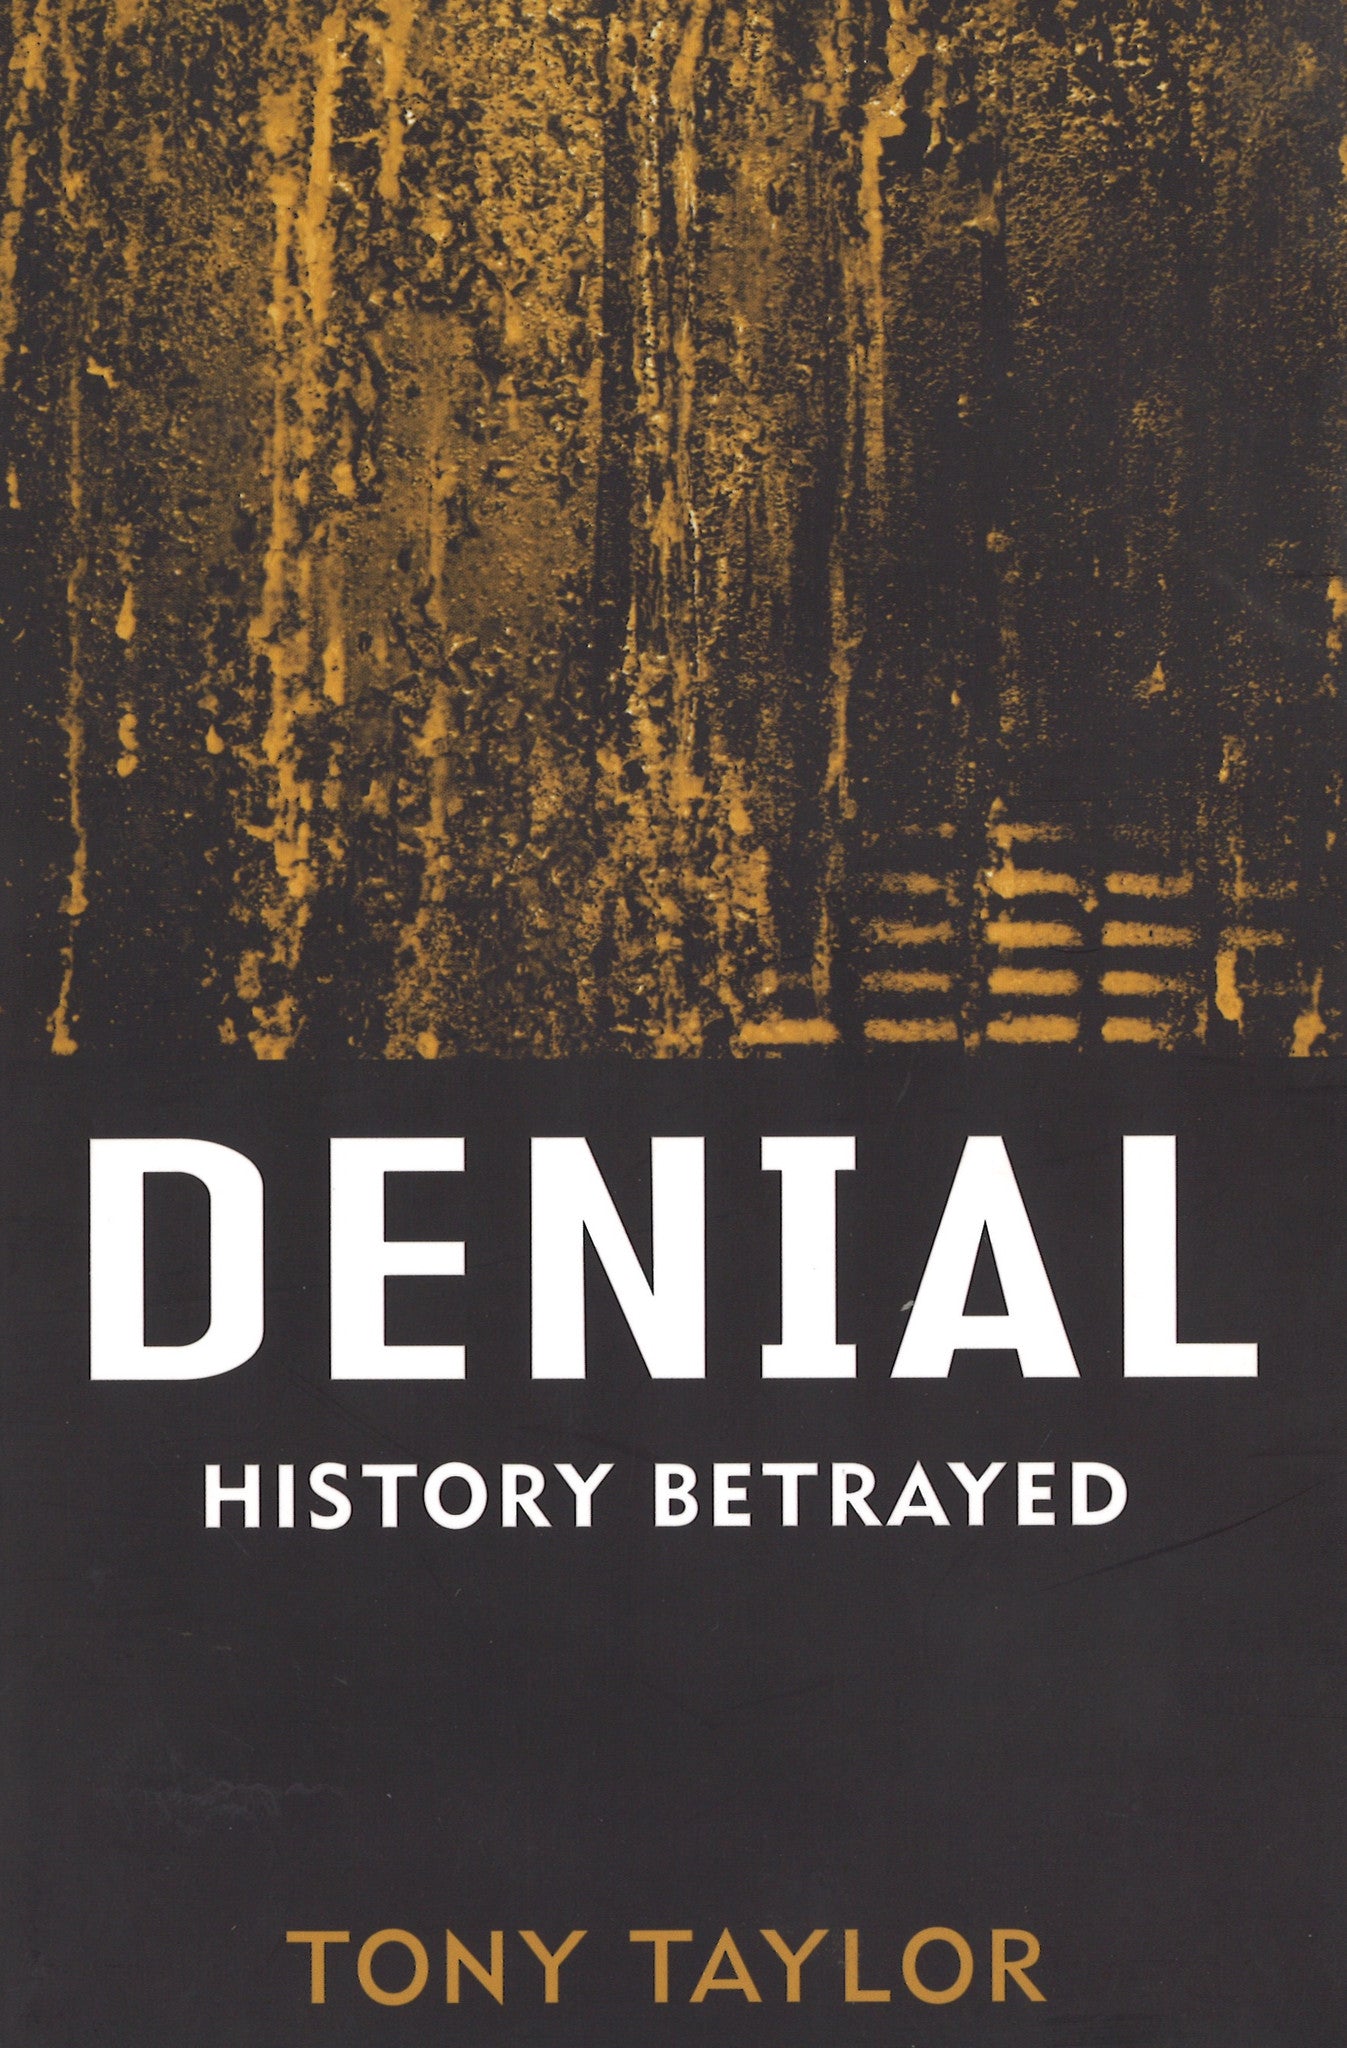 DENIAL: HISTORY BETRAYED